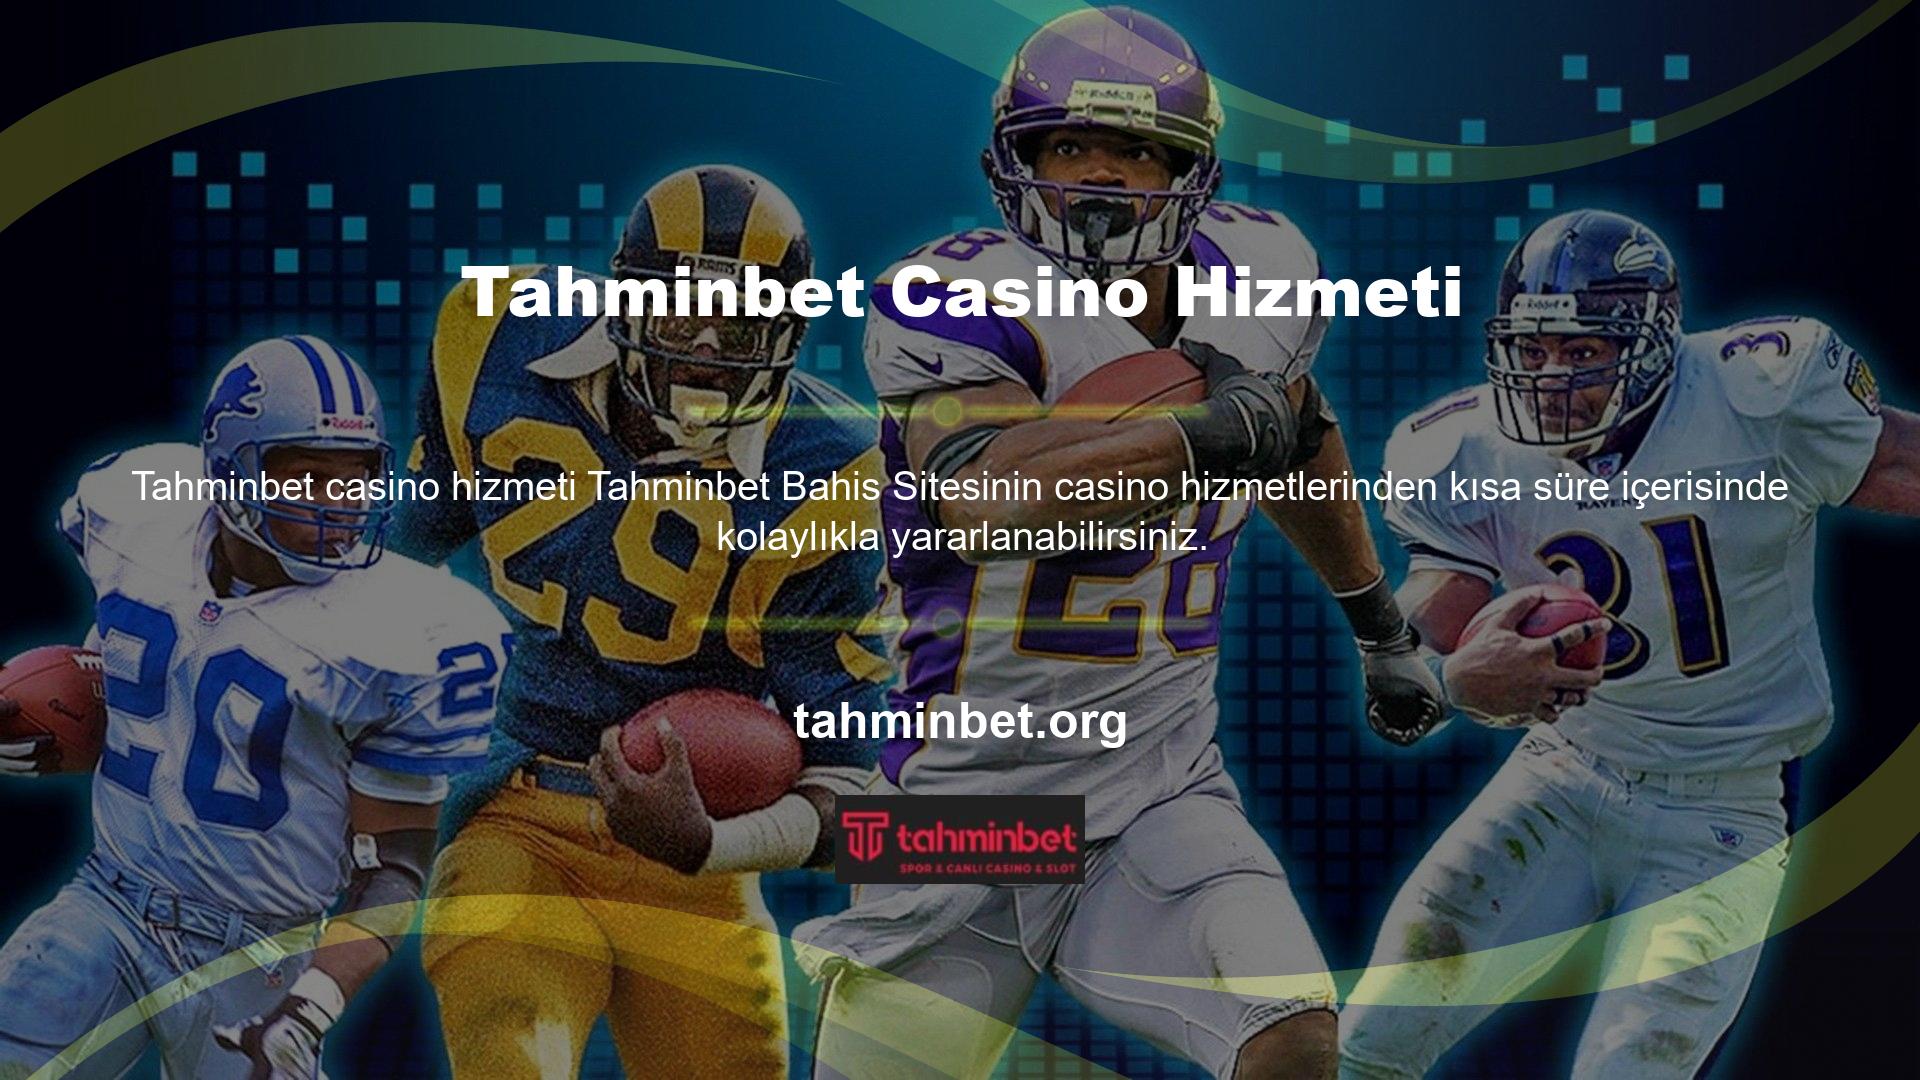 Tahminbet Casino söz konusu olduğunda kullanıcılarına hızlı ve indirilebilir oyun hizmetleri sunmaktadır